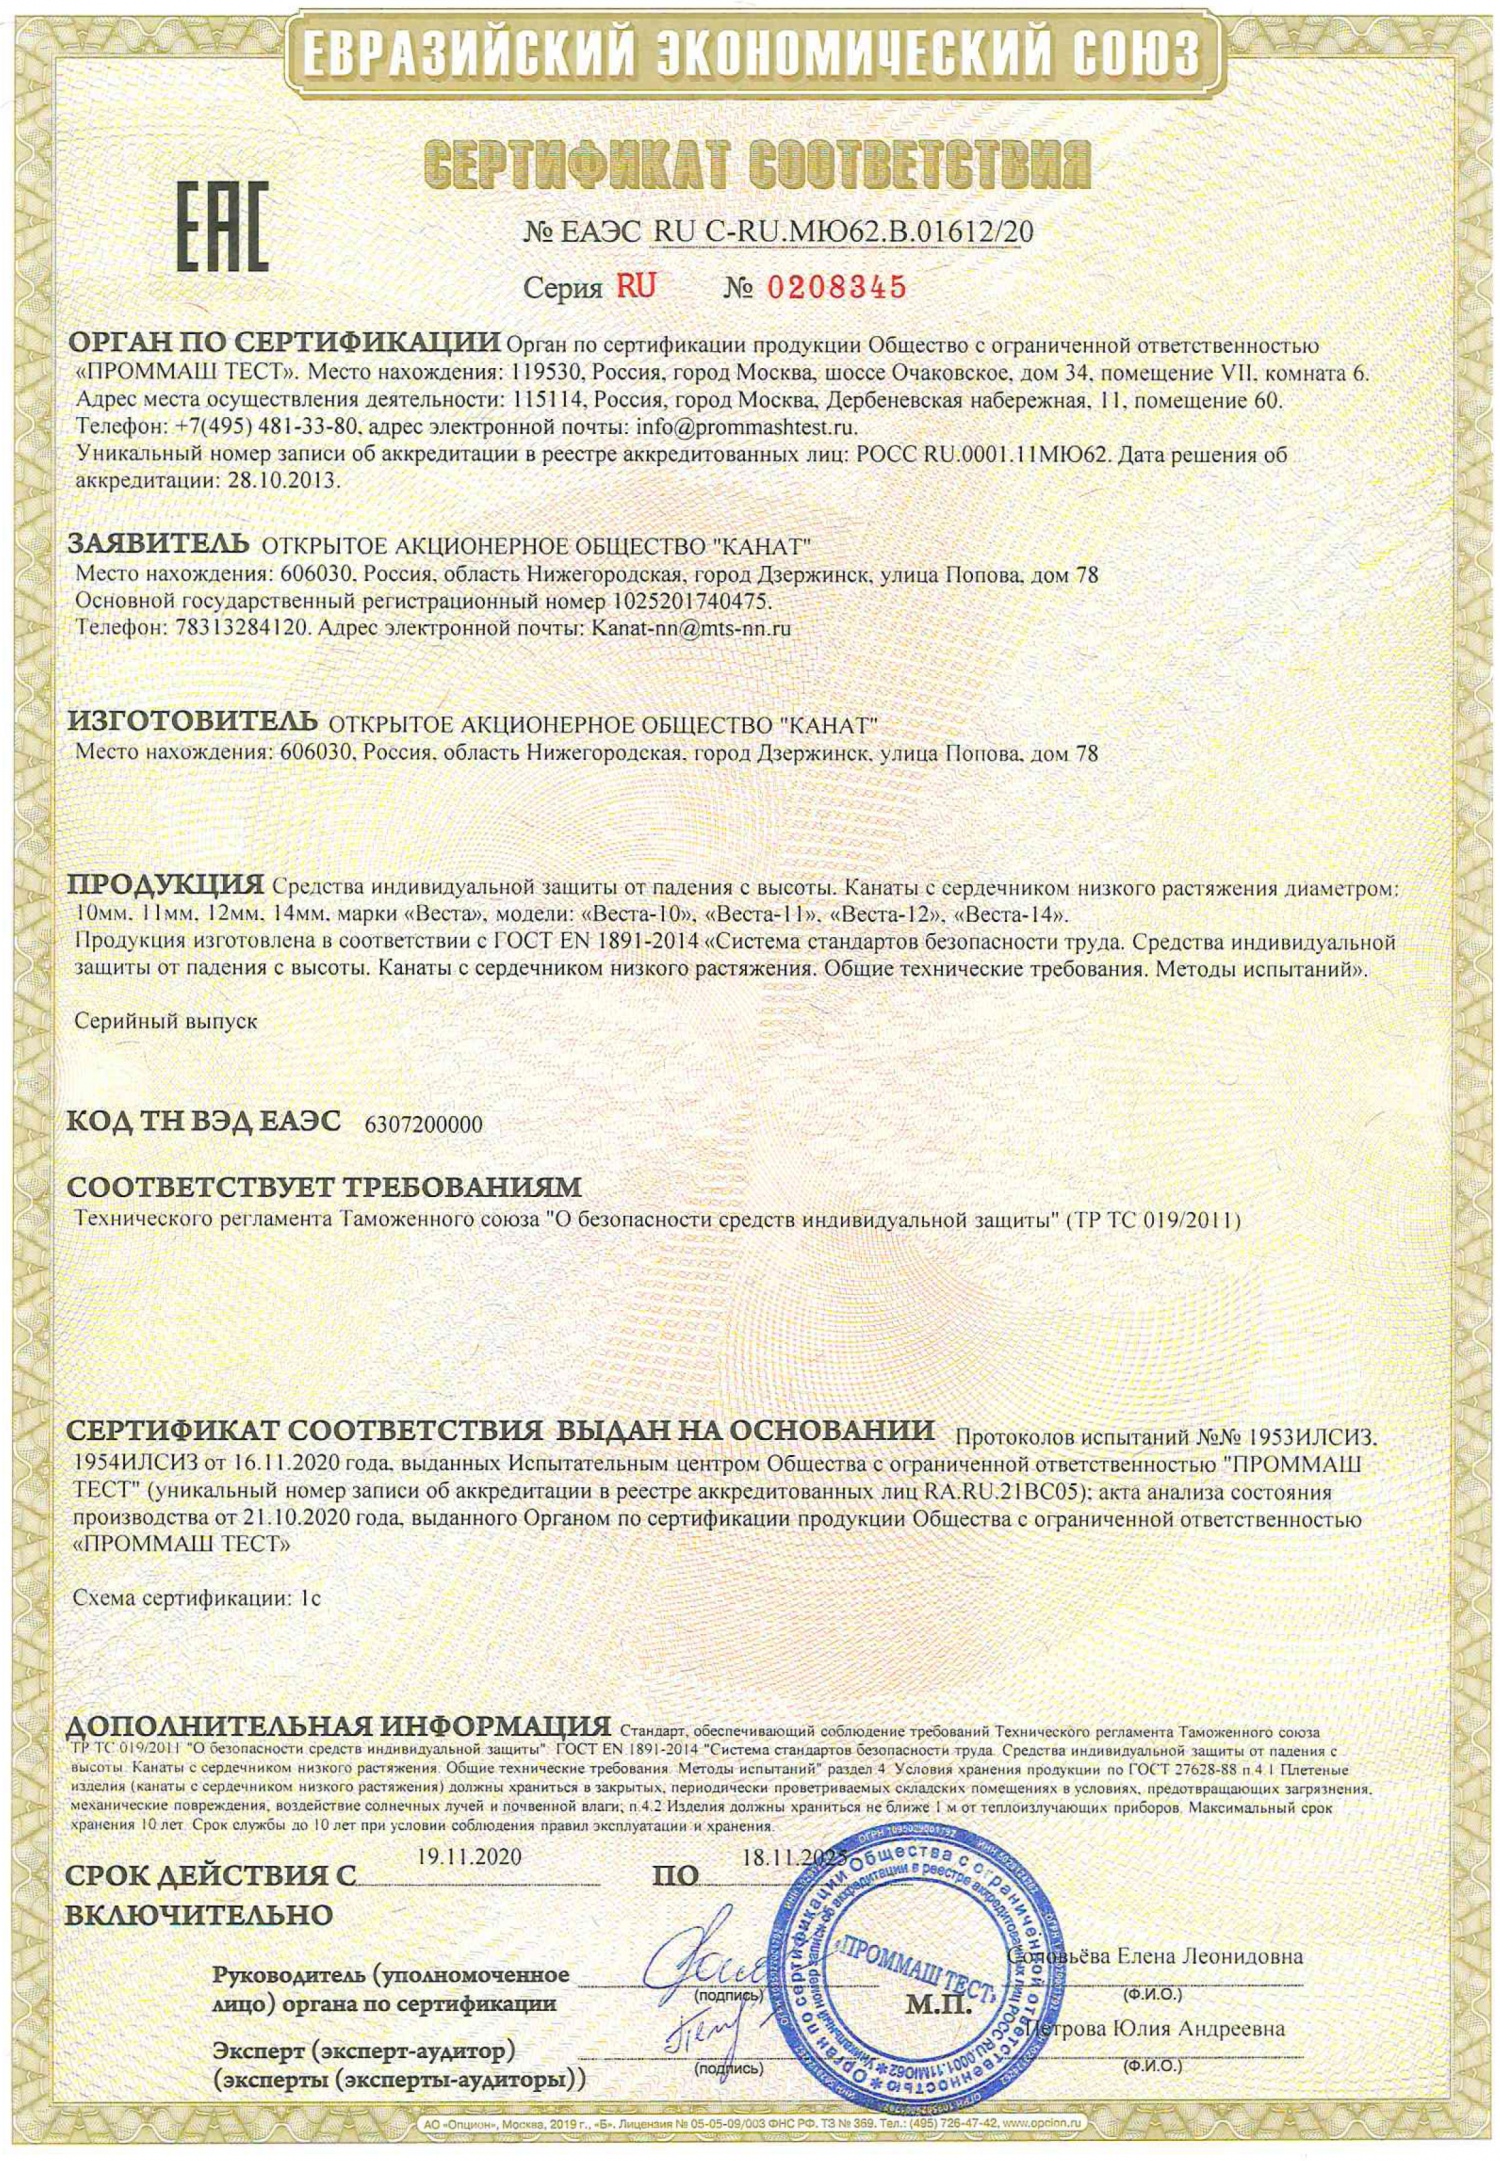 веревка "ВЕСТА" успешно прошла сертификацию на соответствие требованиям Технического регламента Таможенного Союза ТР ТС 019/2011 "О безопасности СИЗ".